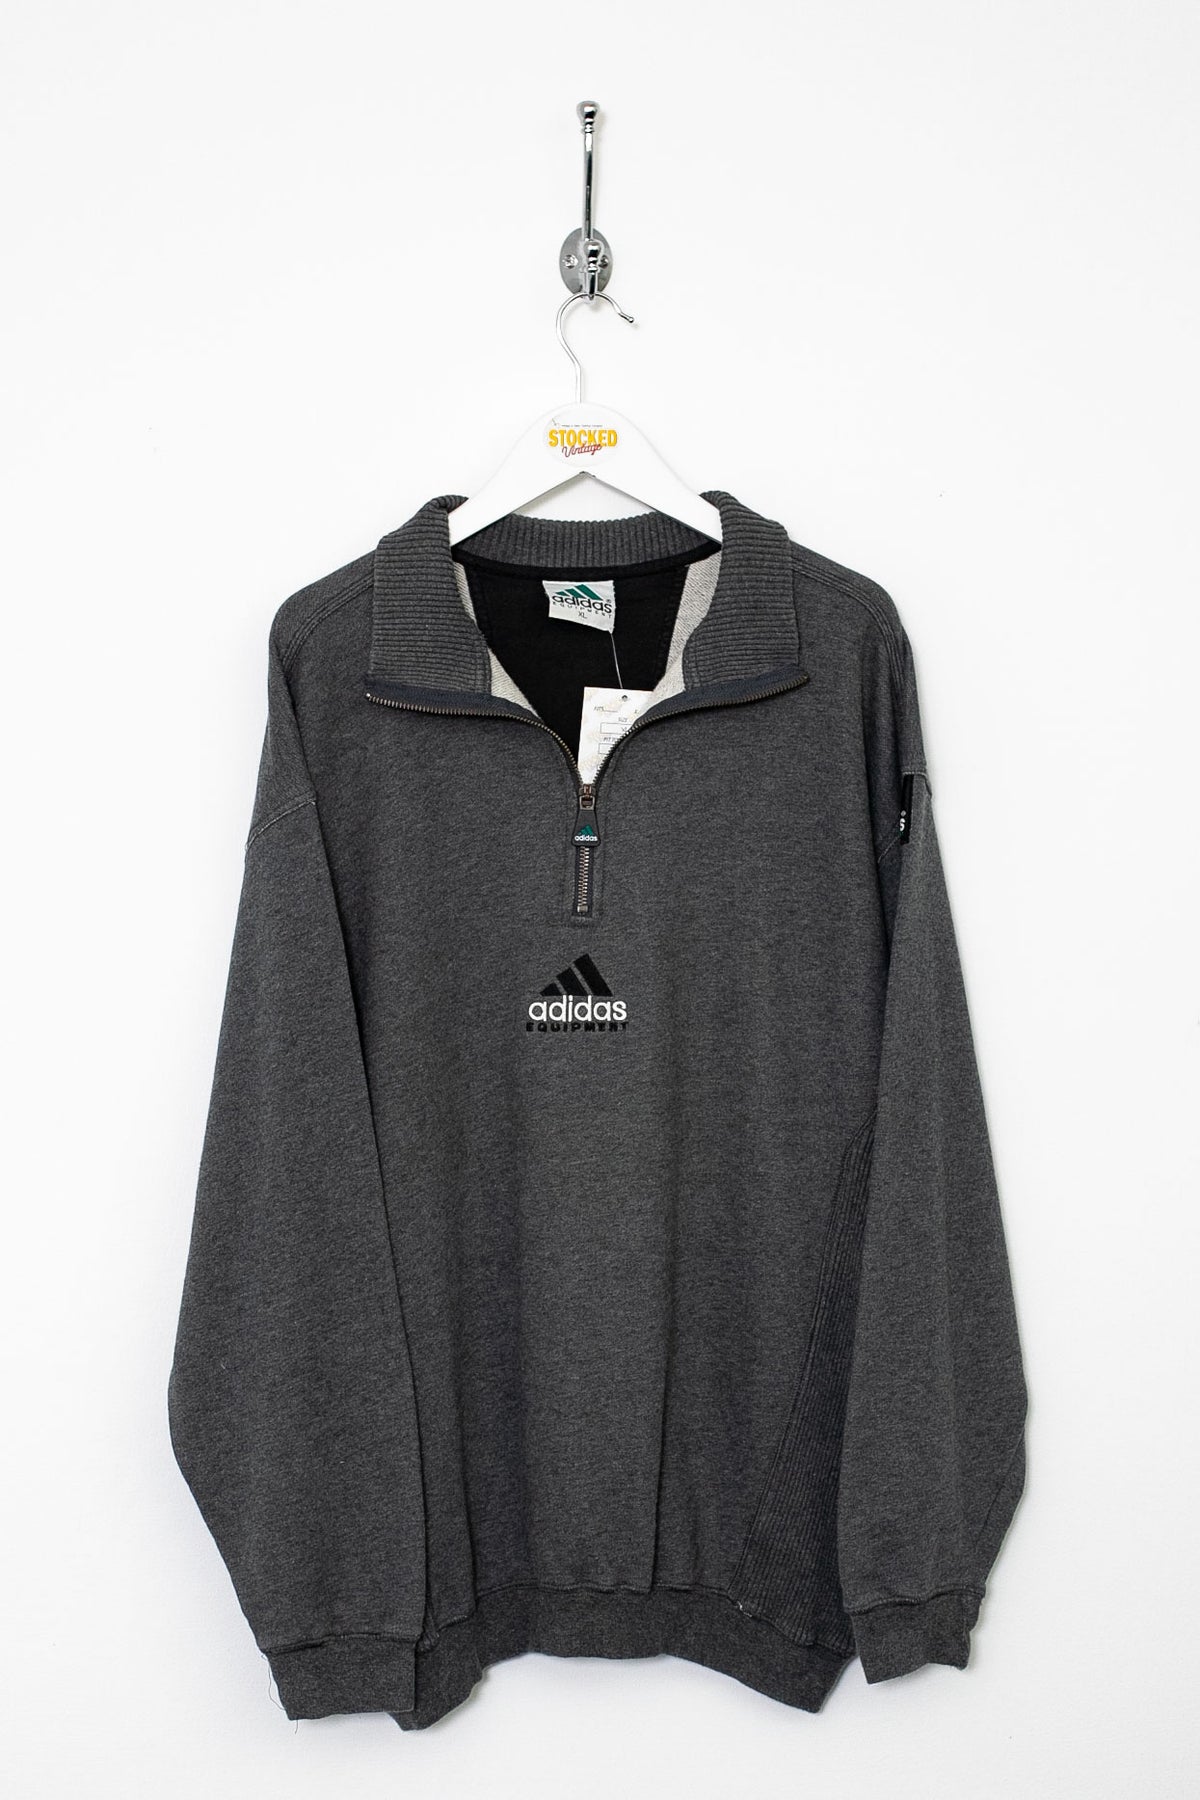 00s Adidas Equipment 1/4 Zip Sweatshirt (XL)